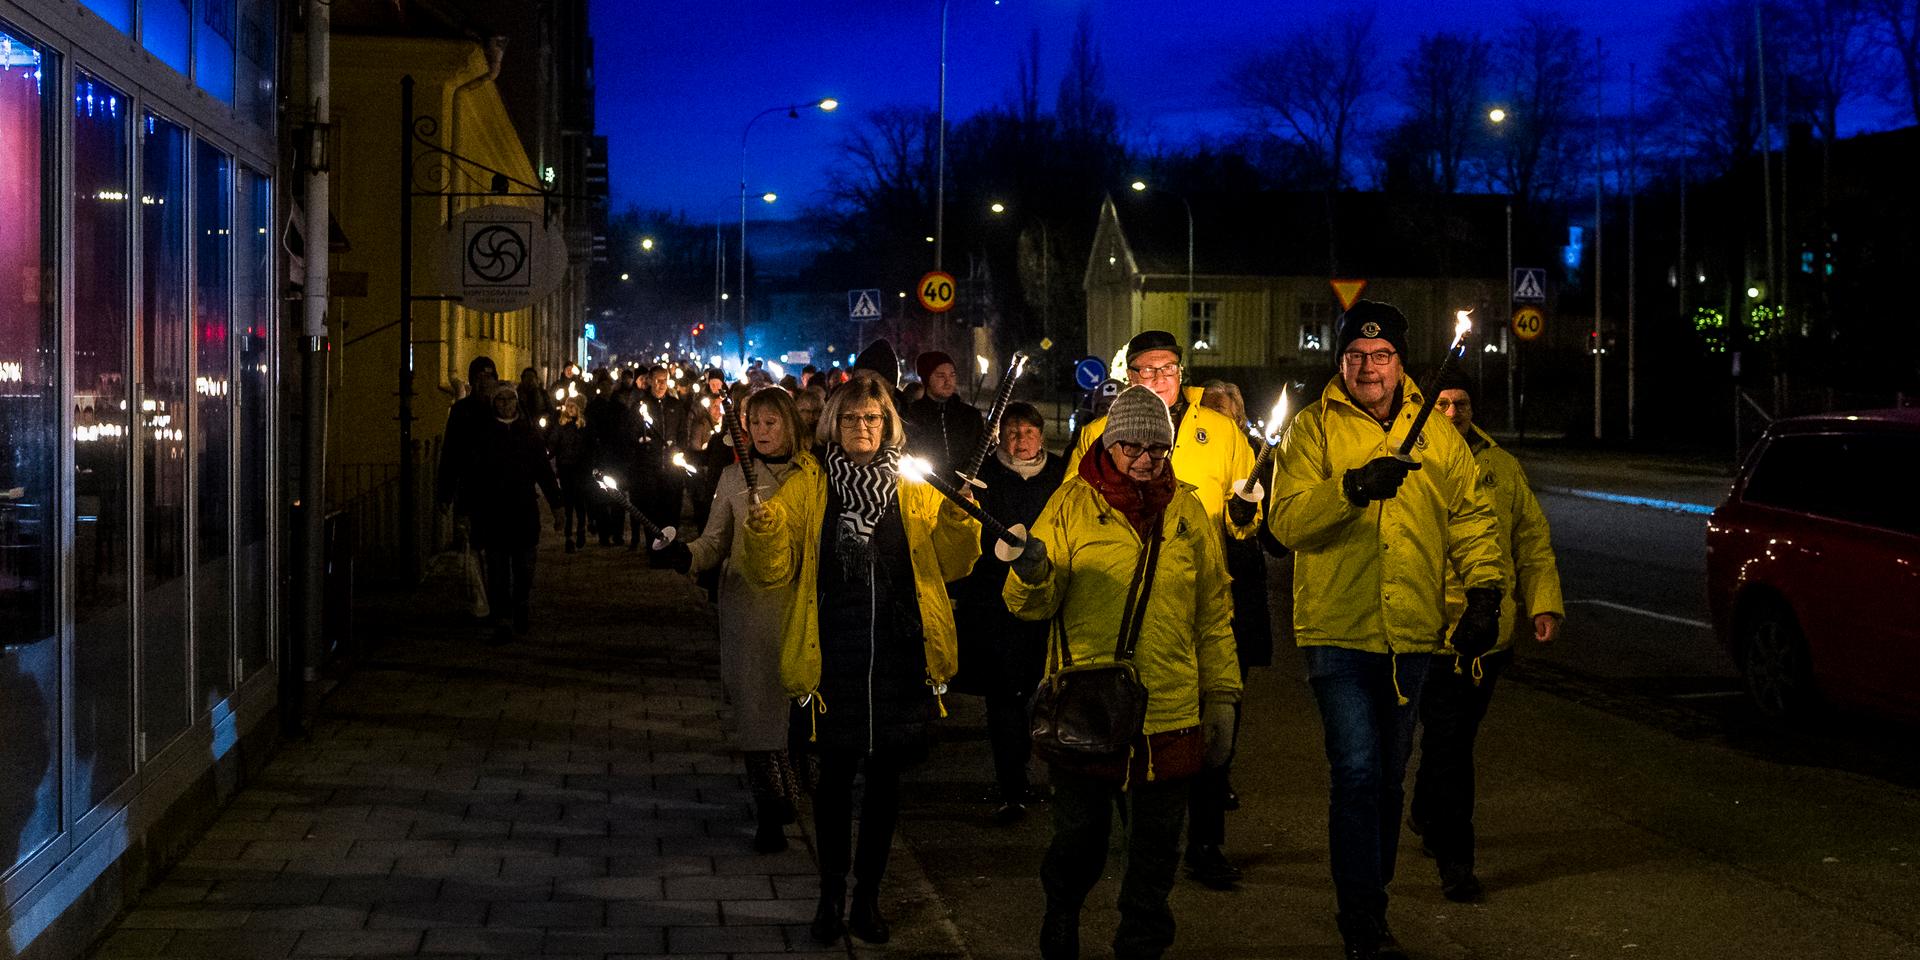 Vänersborgs kommun ställer in sitt nyårsfirande i Plantaget, detta efter att regeringen kom med nya restriktioner under tisdagen.